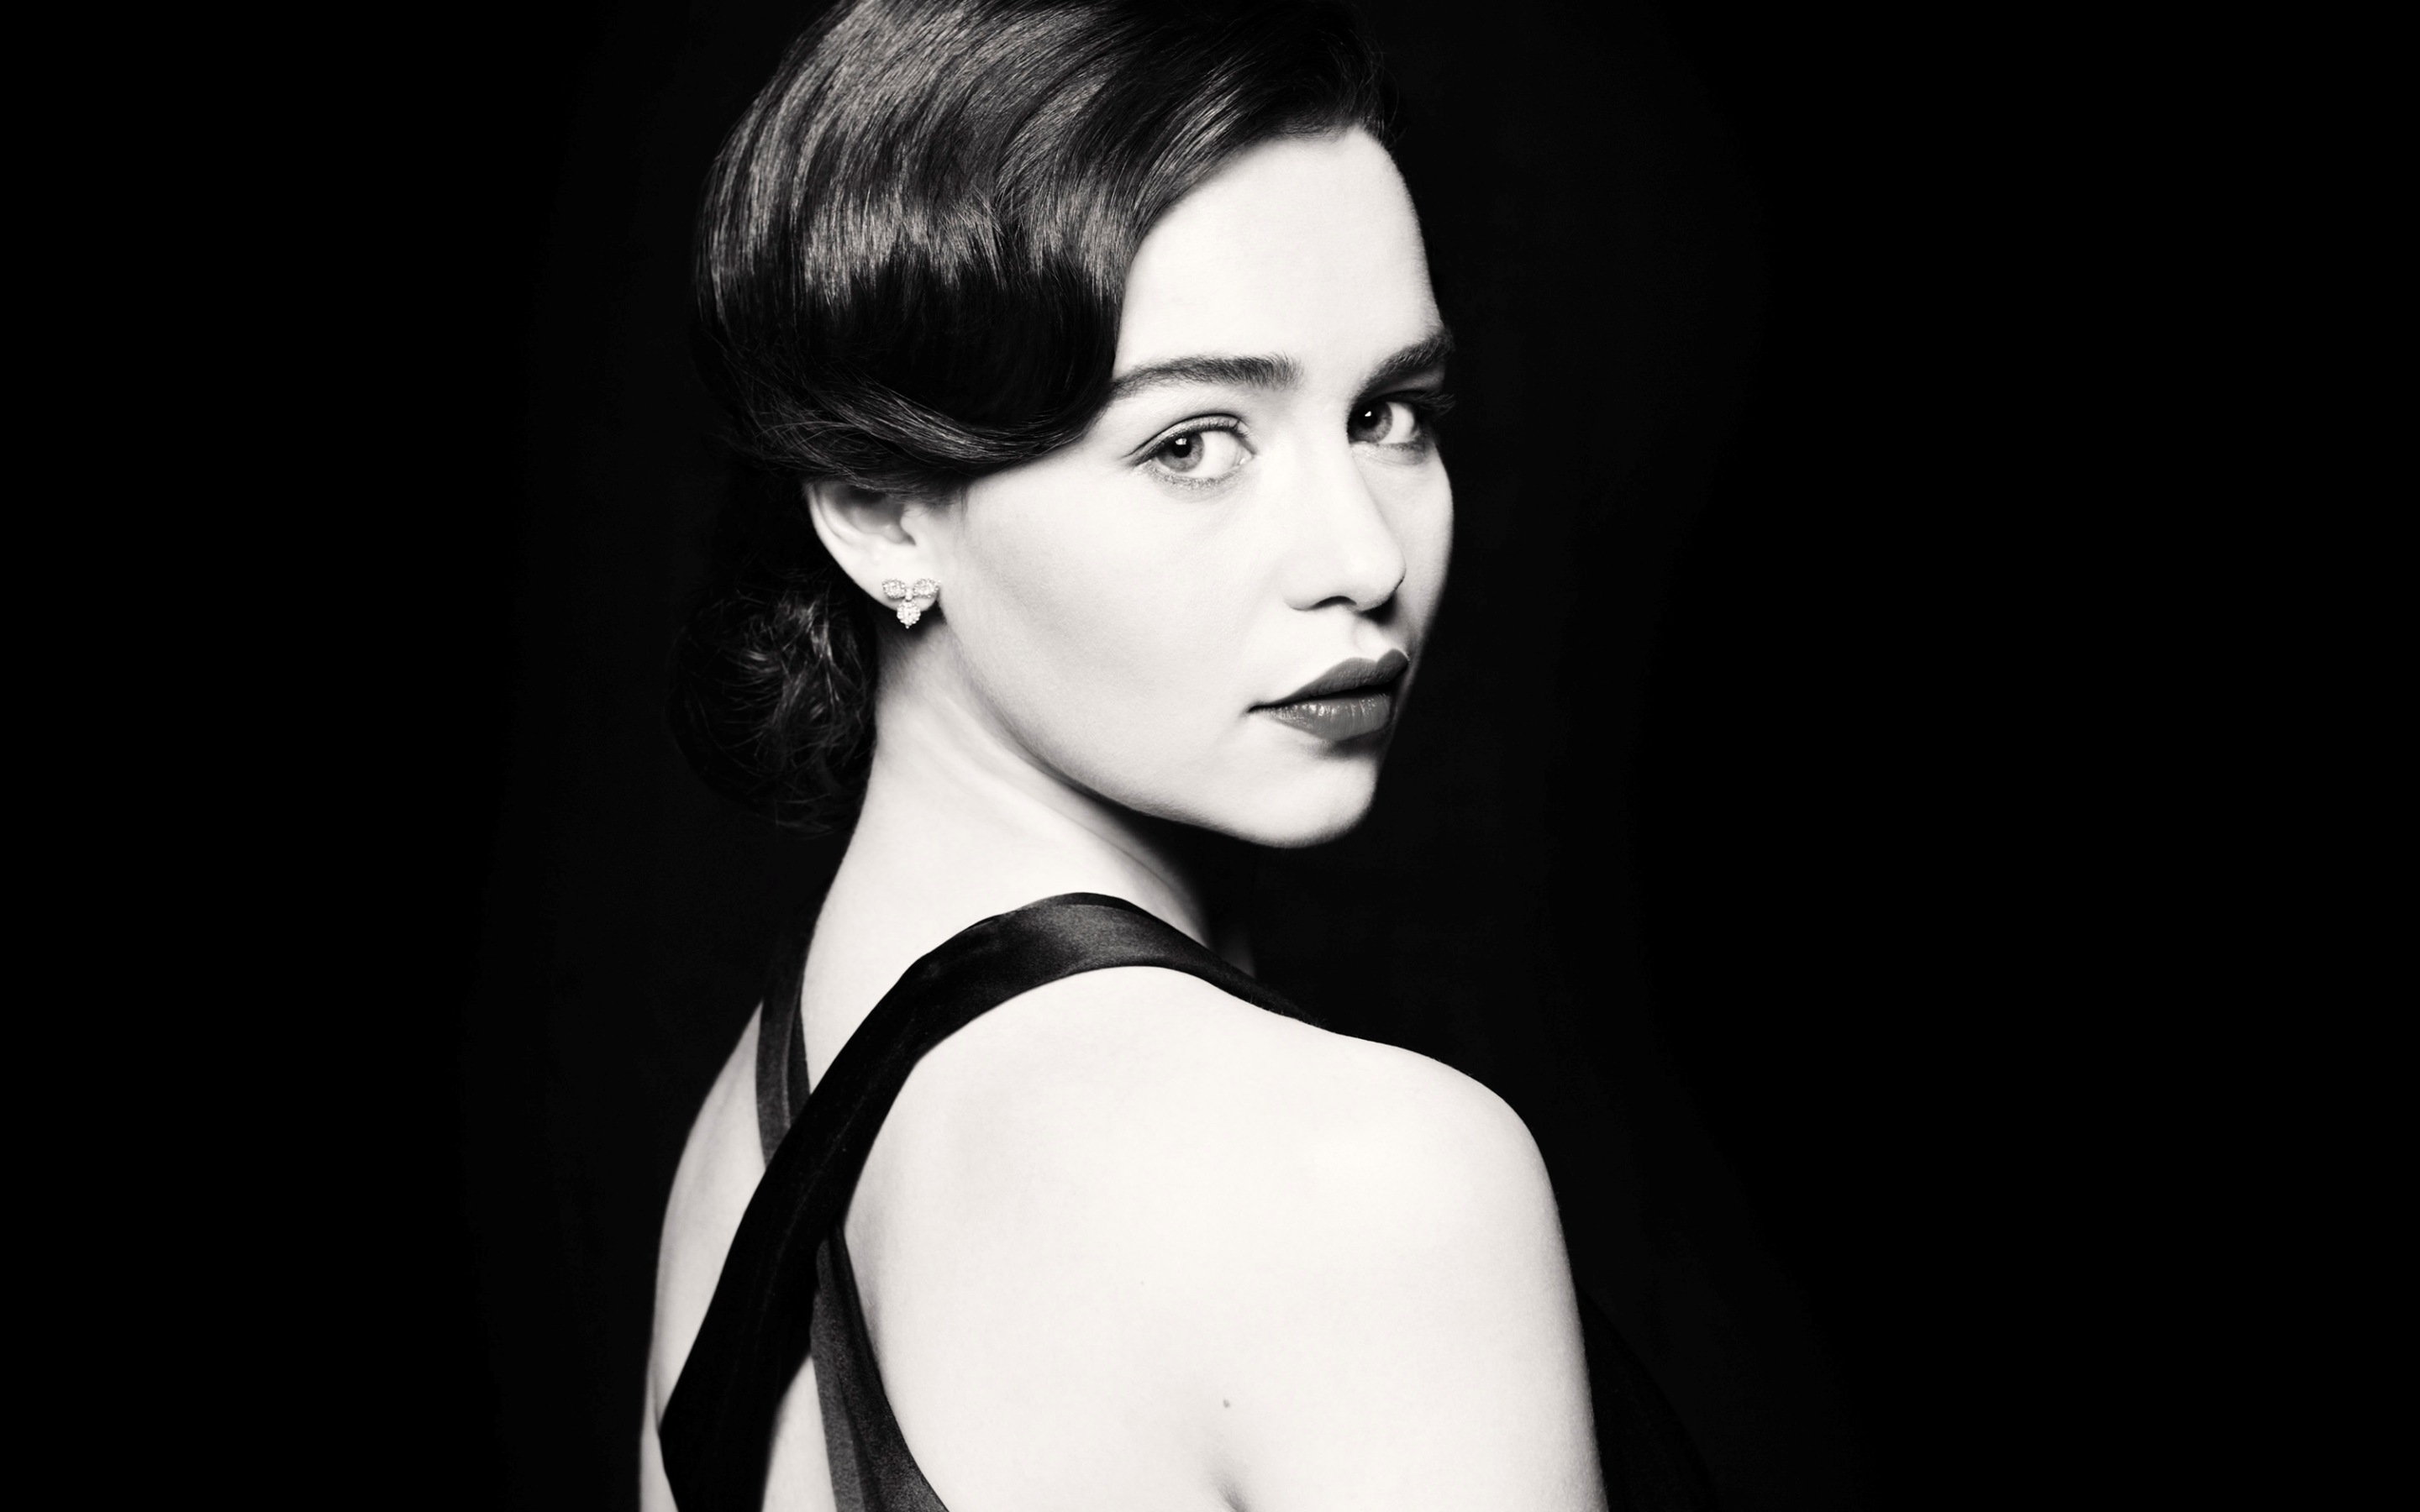 Emilia Clarke Monochrome In Black Dress Wallpapers